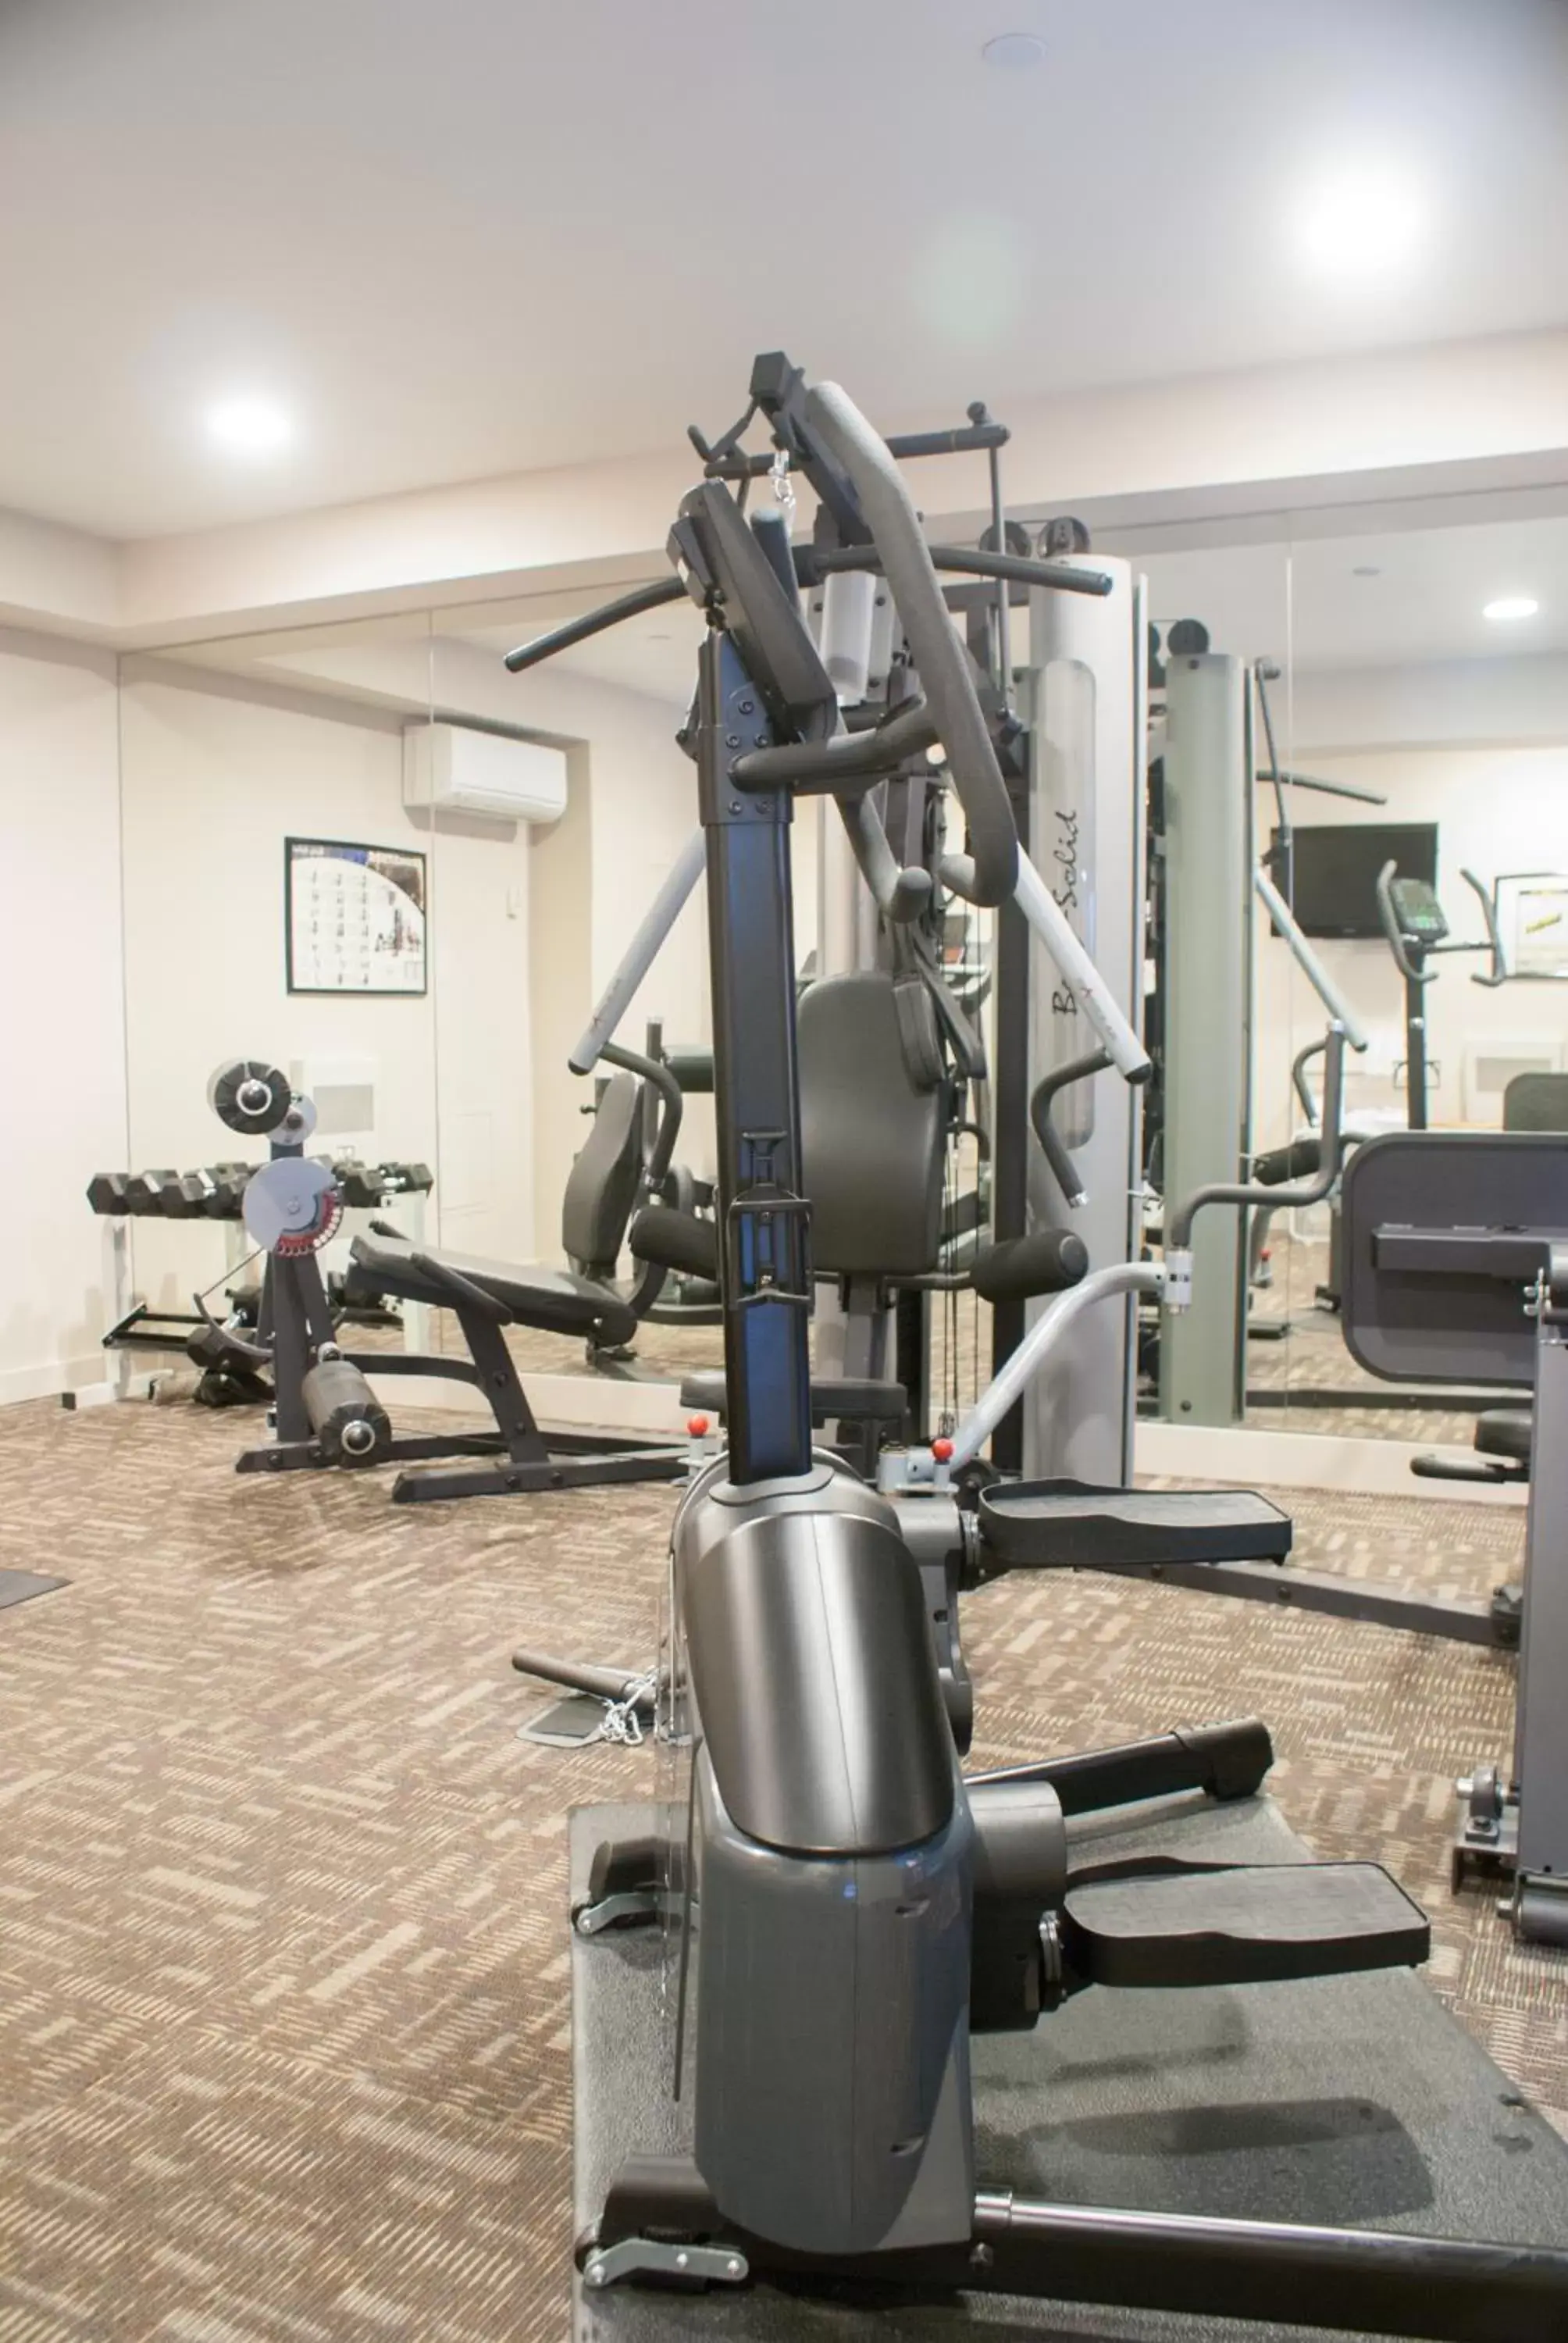 Fitness centre/facilities, Fitness Center/Facilities in Park Regency